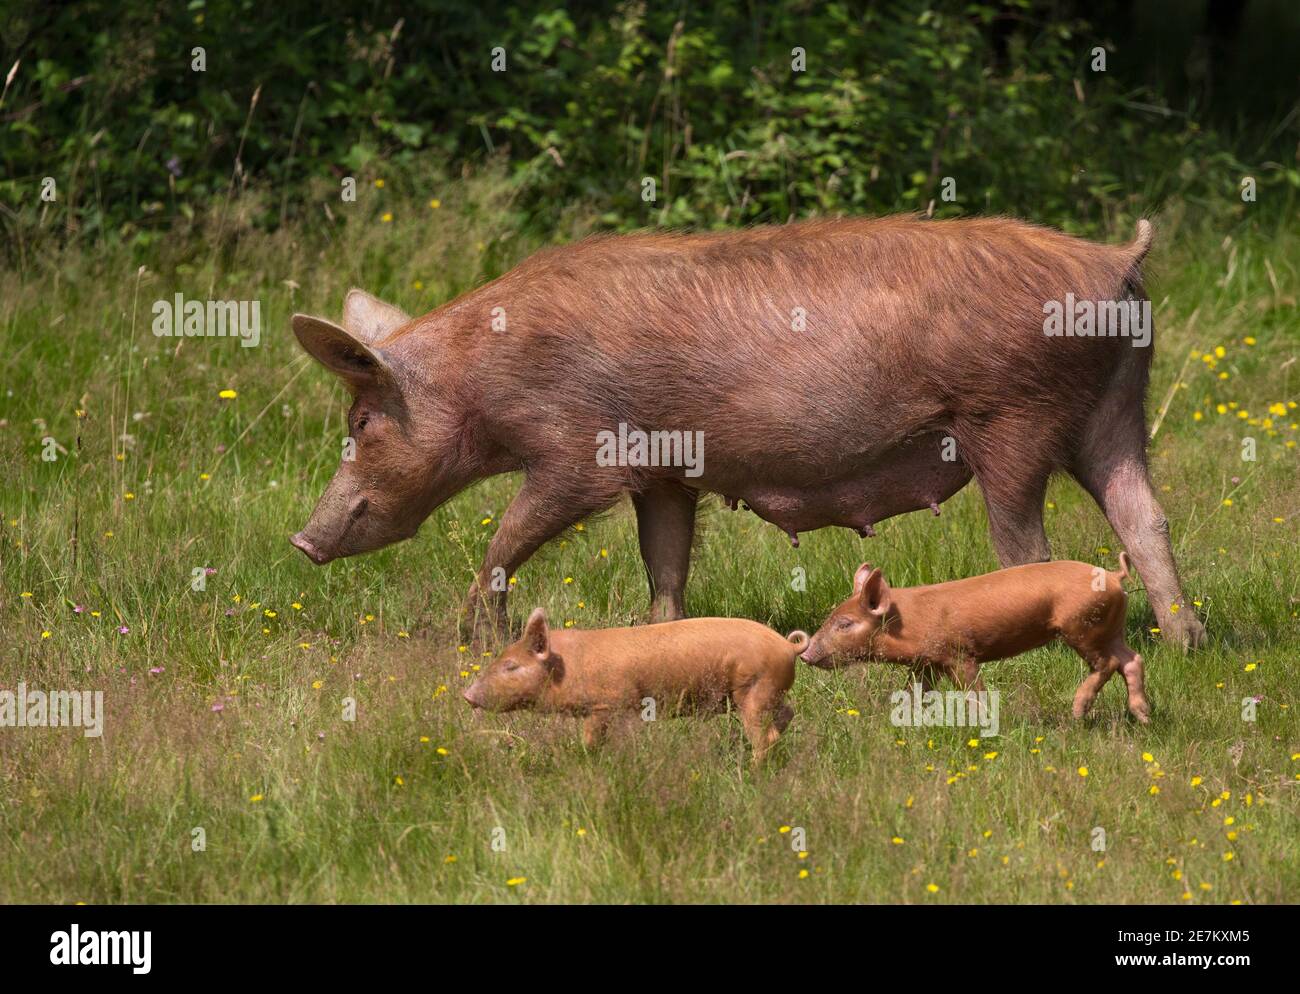 Madre de cerdo de Tamworth y pasto joven. Animales semisalvajes cultivados en el experimento Knapp Rewilding, West Sussex, Reino Unido Foto de stock